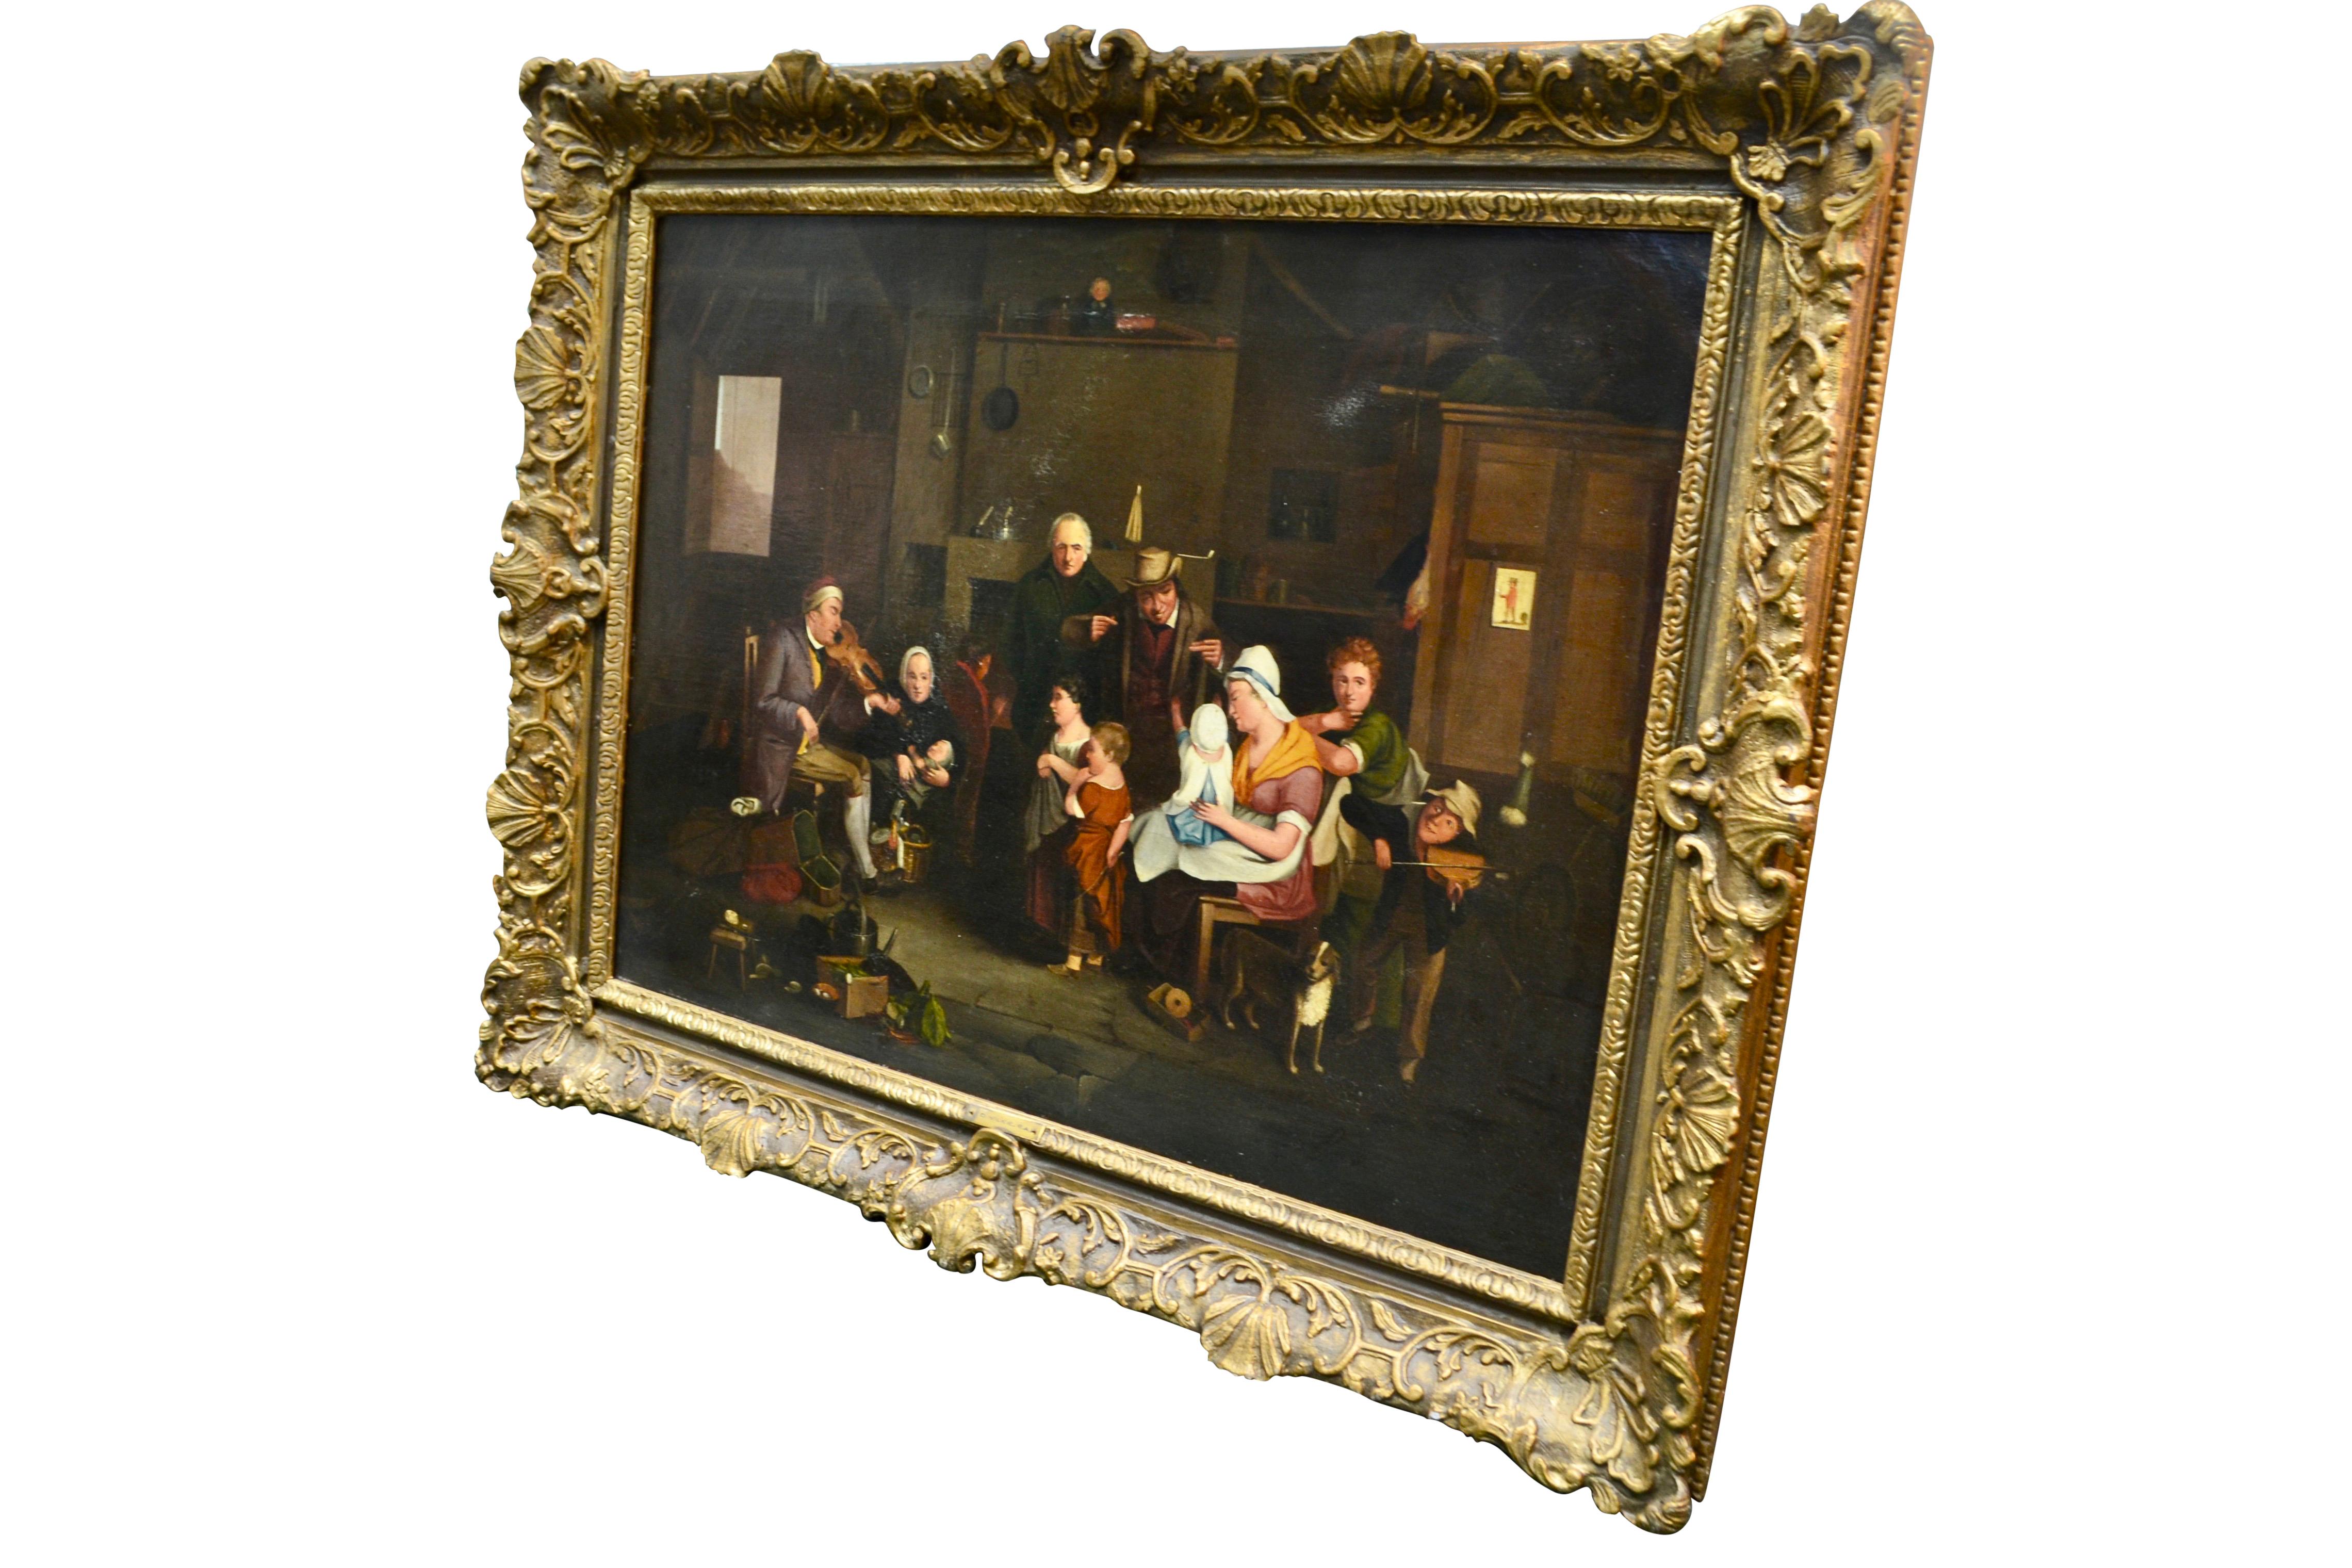 Cette peinture est extrêmement fidèle à l'œuvre originale de l'artiste écossais Sir David Wilkie (1785-1841), aujourd'hui exposée à la Tate Gallery de Londres. Le tableau représente un vieux violoniste aveugle jouant pour une famille nombreuse, dont